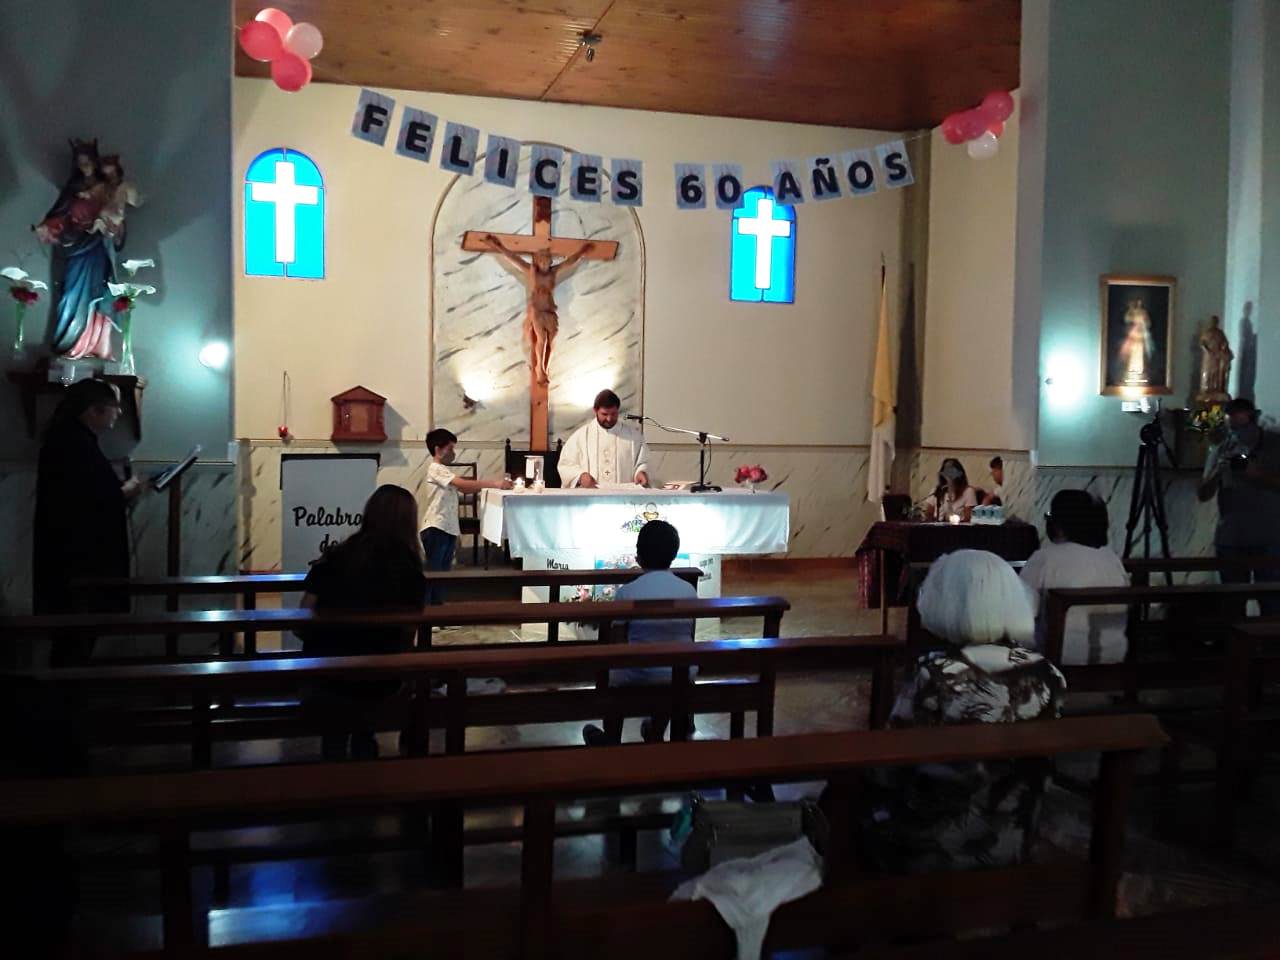  La Capilla María Auxiliadora celebró sus 60 años con una Santa Misa